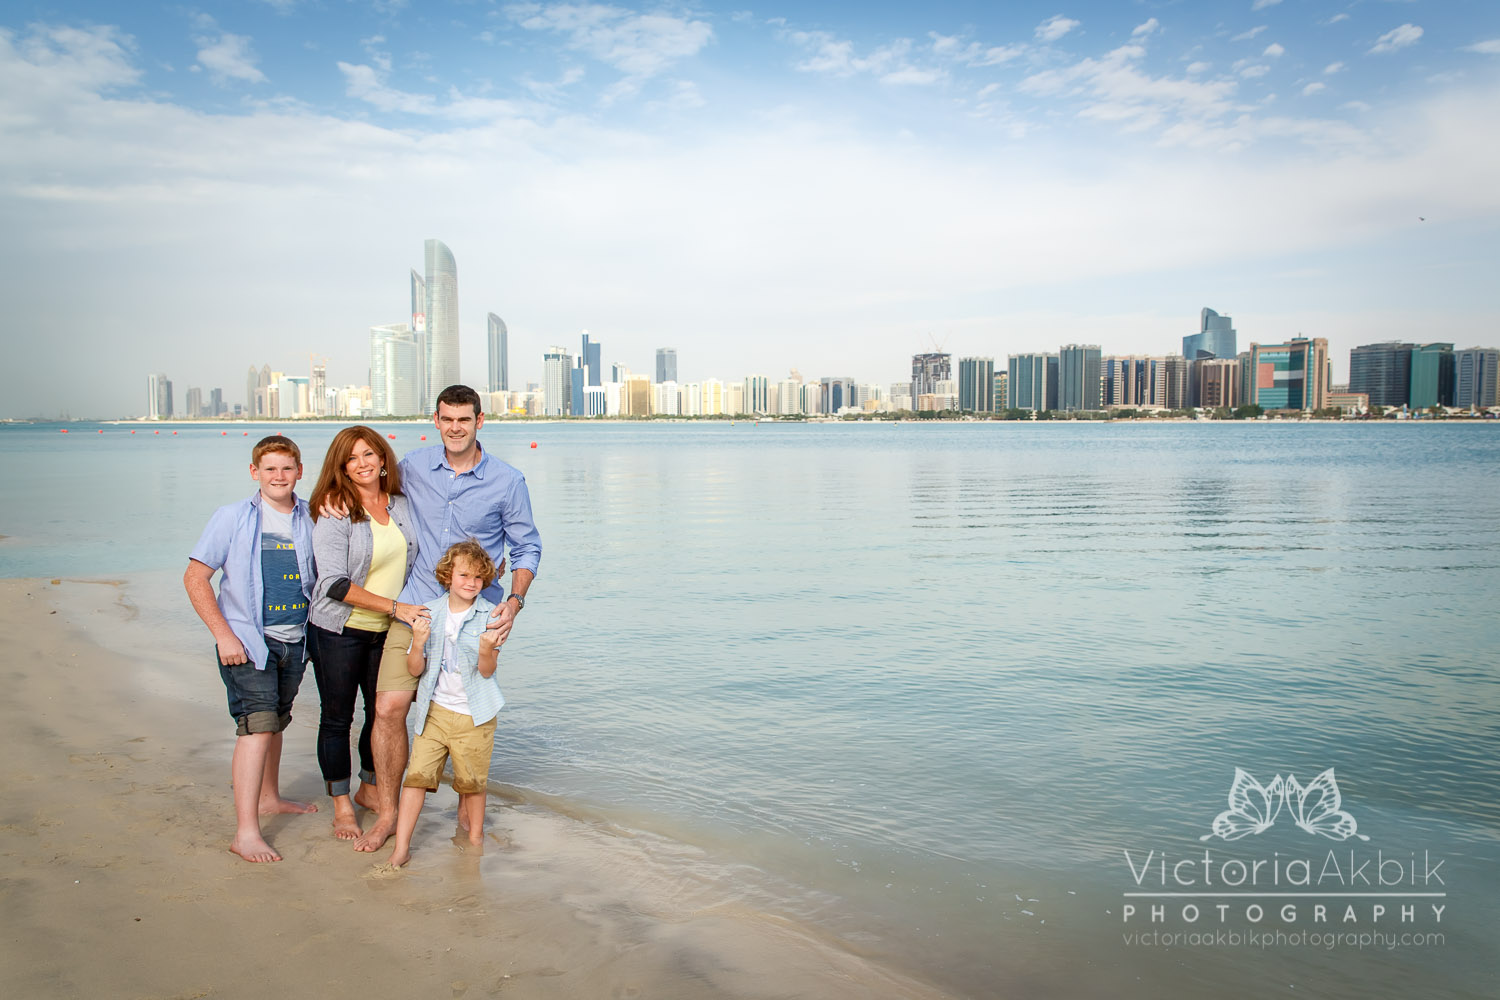 Mrs K’s Family Photo Shoot | Abu Dhabi Lifestyle Family Photography » Victoria Akbik Photography